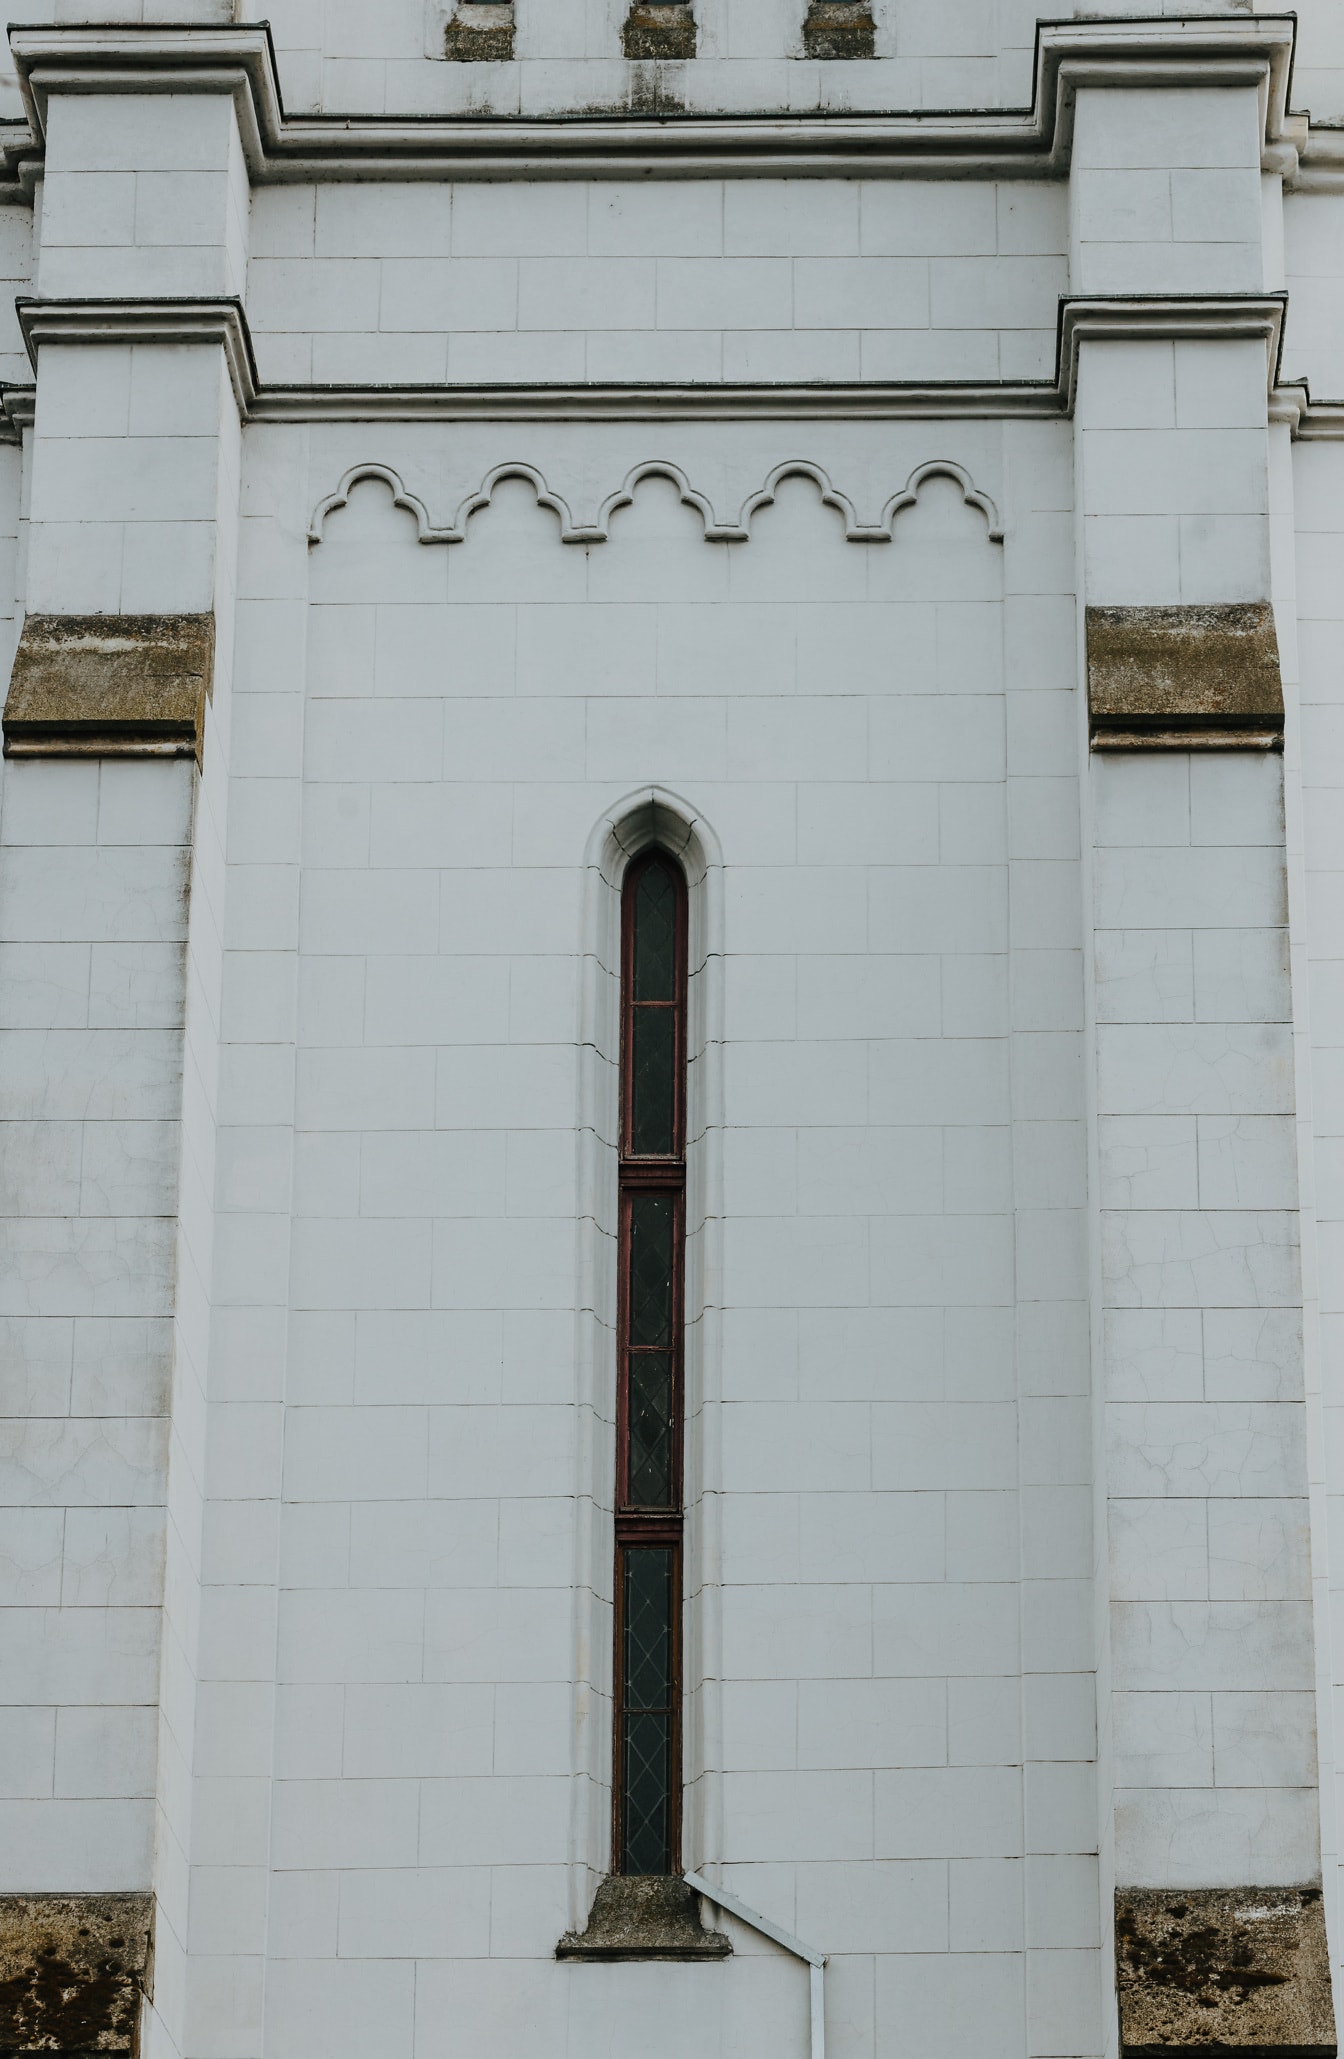 Magas keskeny gótikus ablak fehér márványfalon